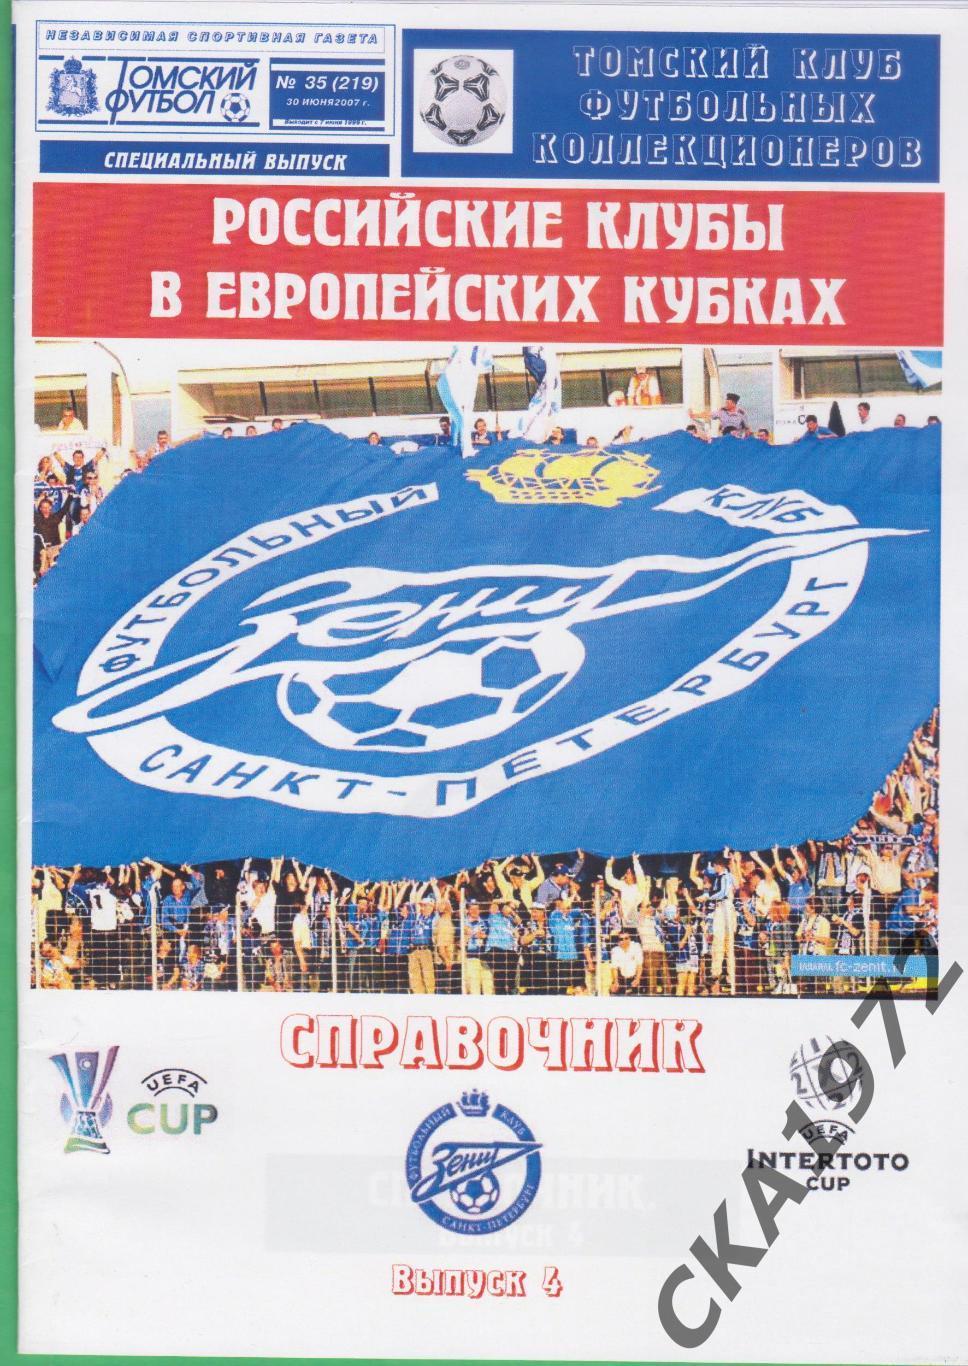 Зенит Санкт-Петербург Российские клубы в европейских кубках 2007 выпуск 4 +++